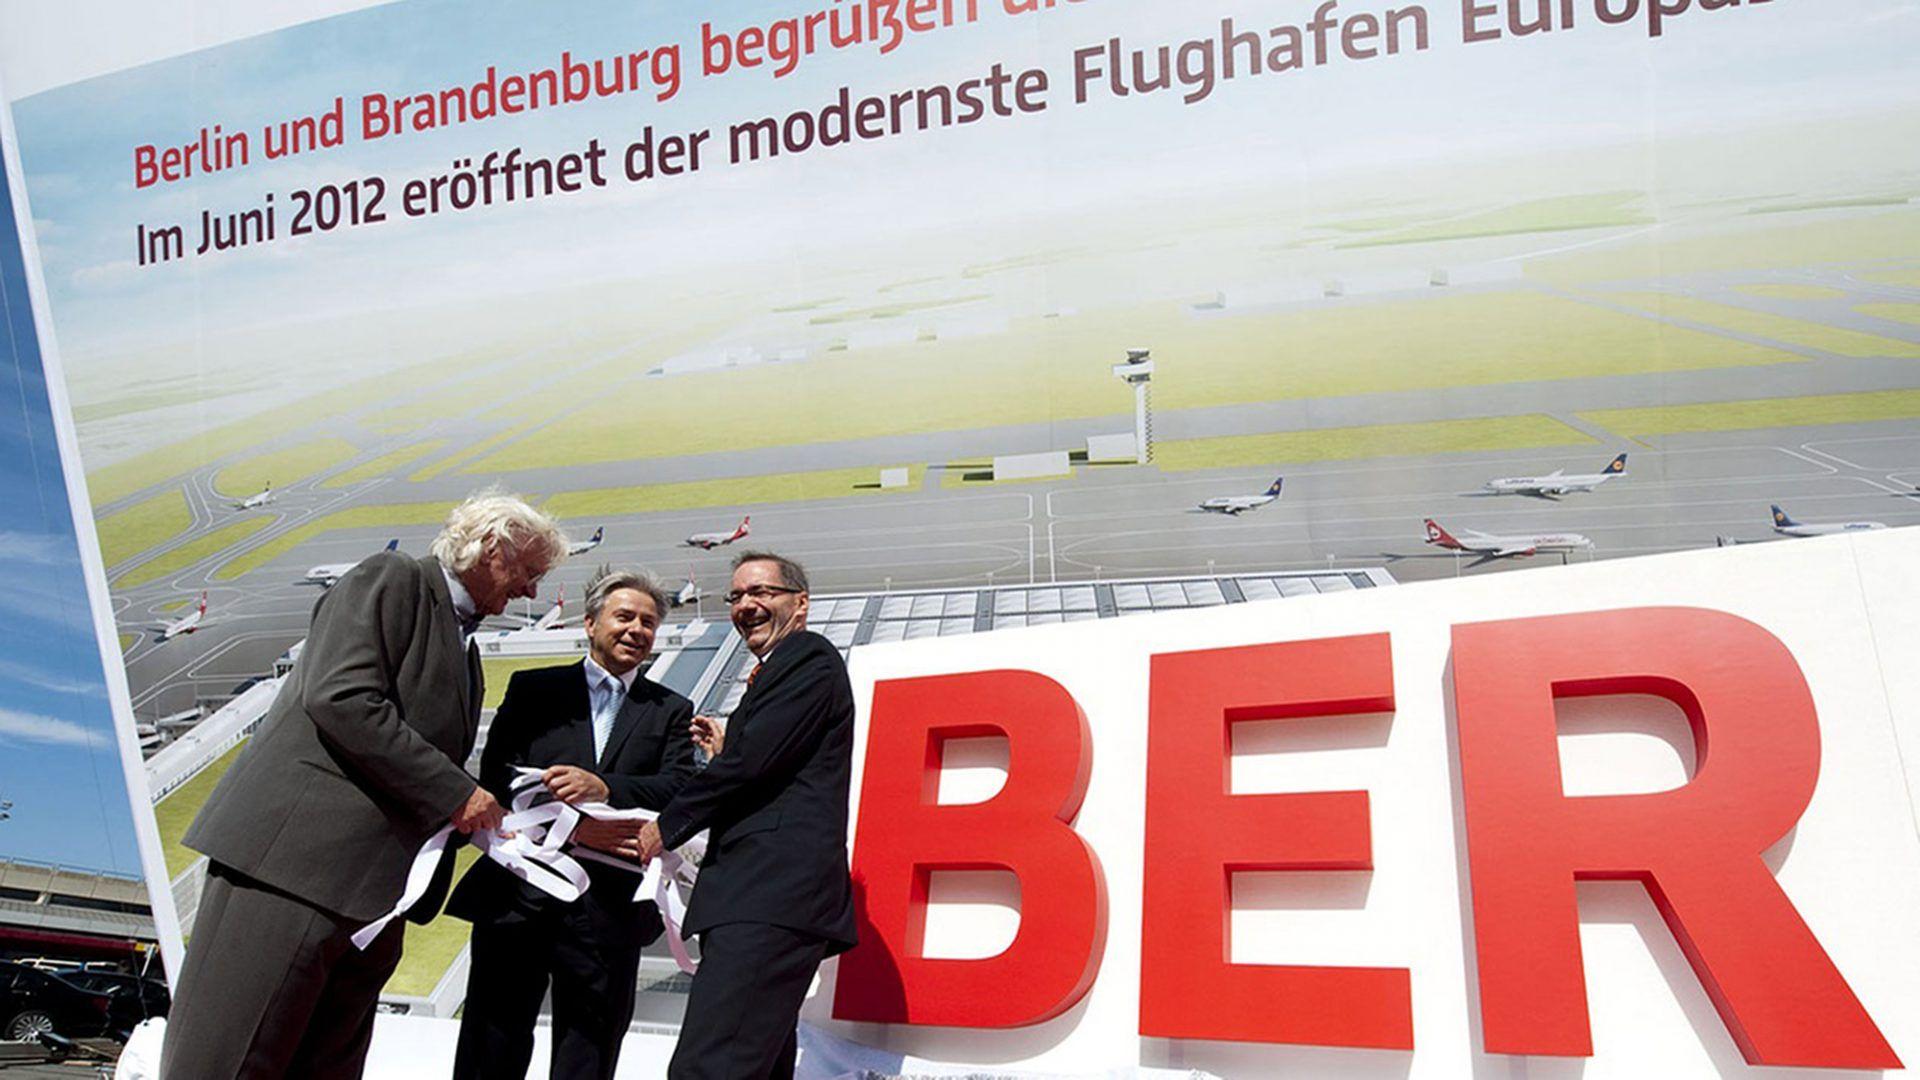 Ber Logo - Naming and Corporate Design for BER. Realgestalt GmbH, Berlin